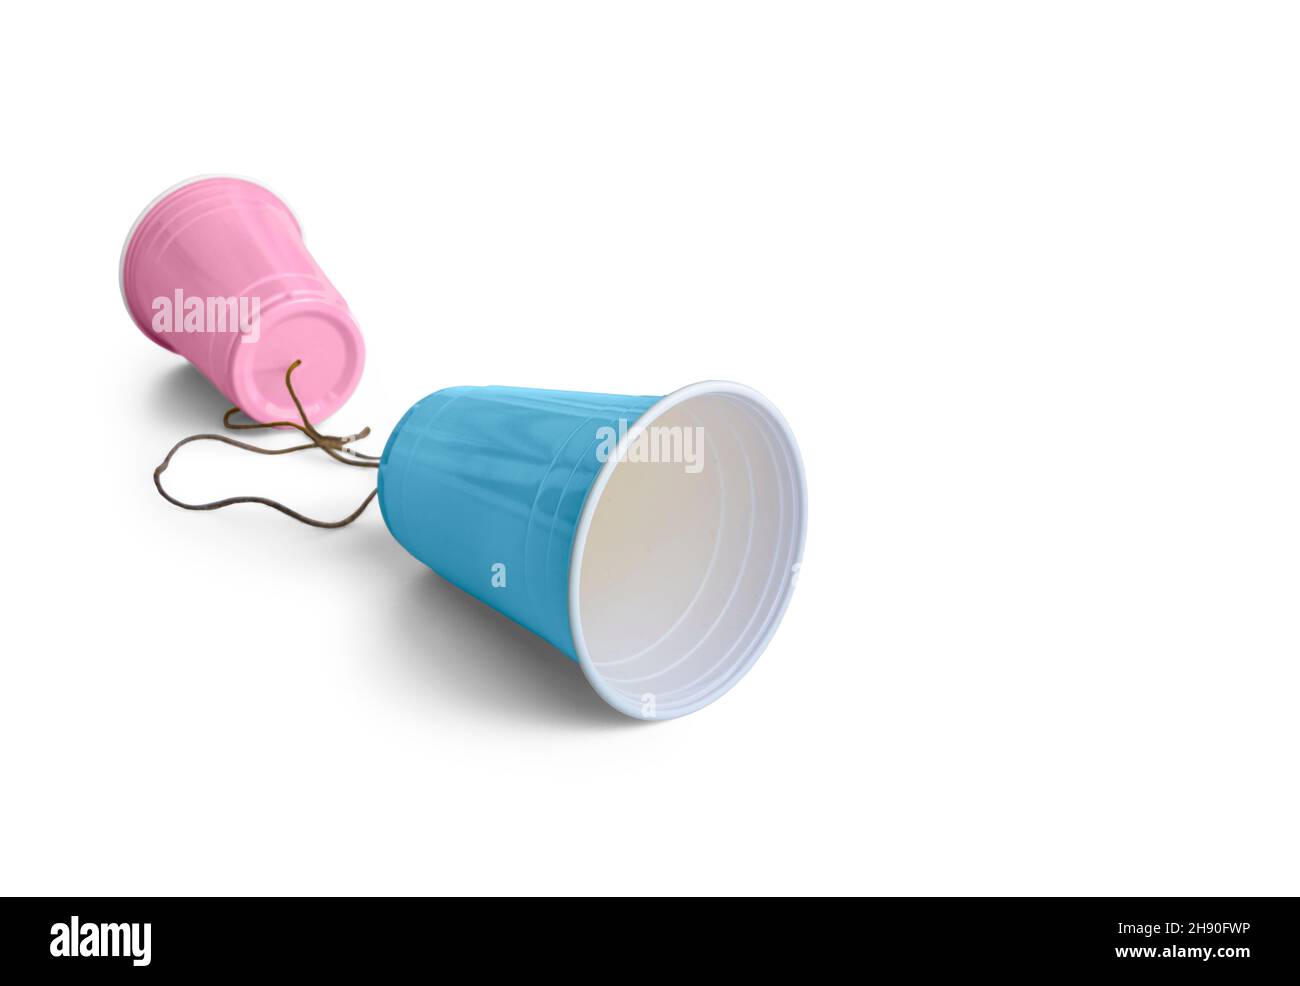 Comunicación rosa y azul vaso de plástico con cordón Foto de stock